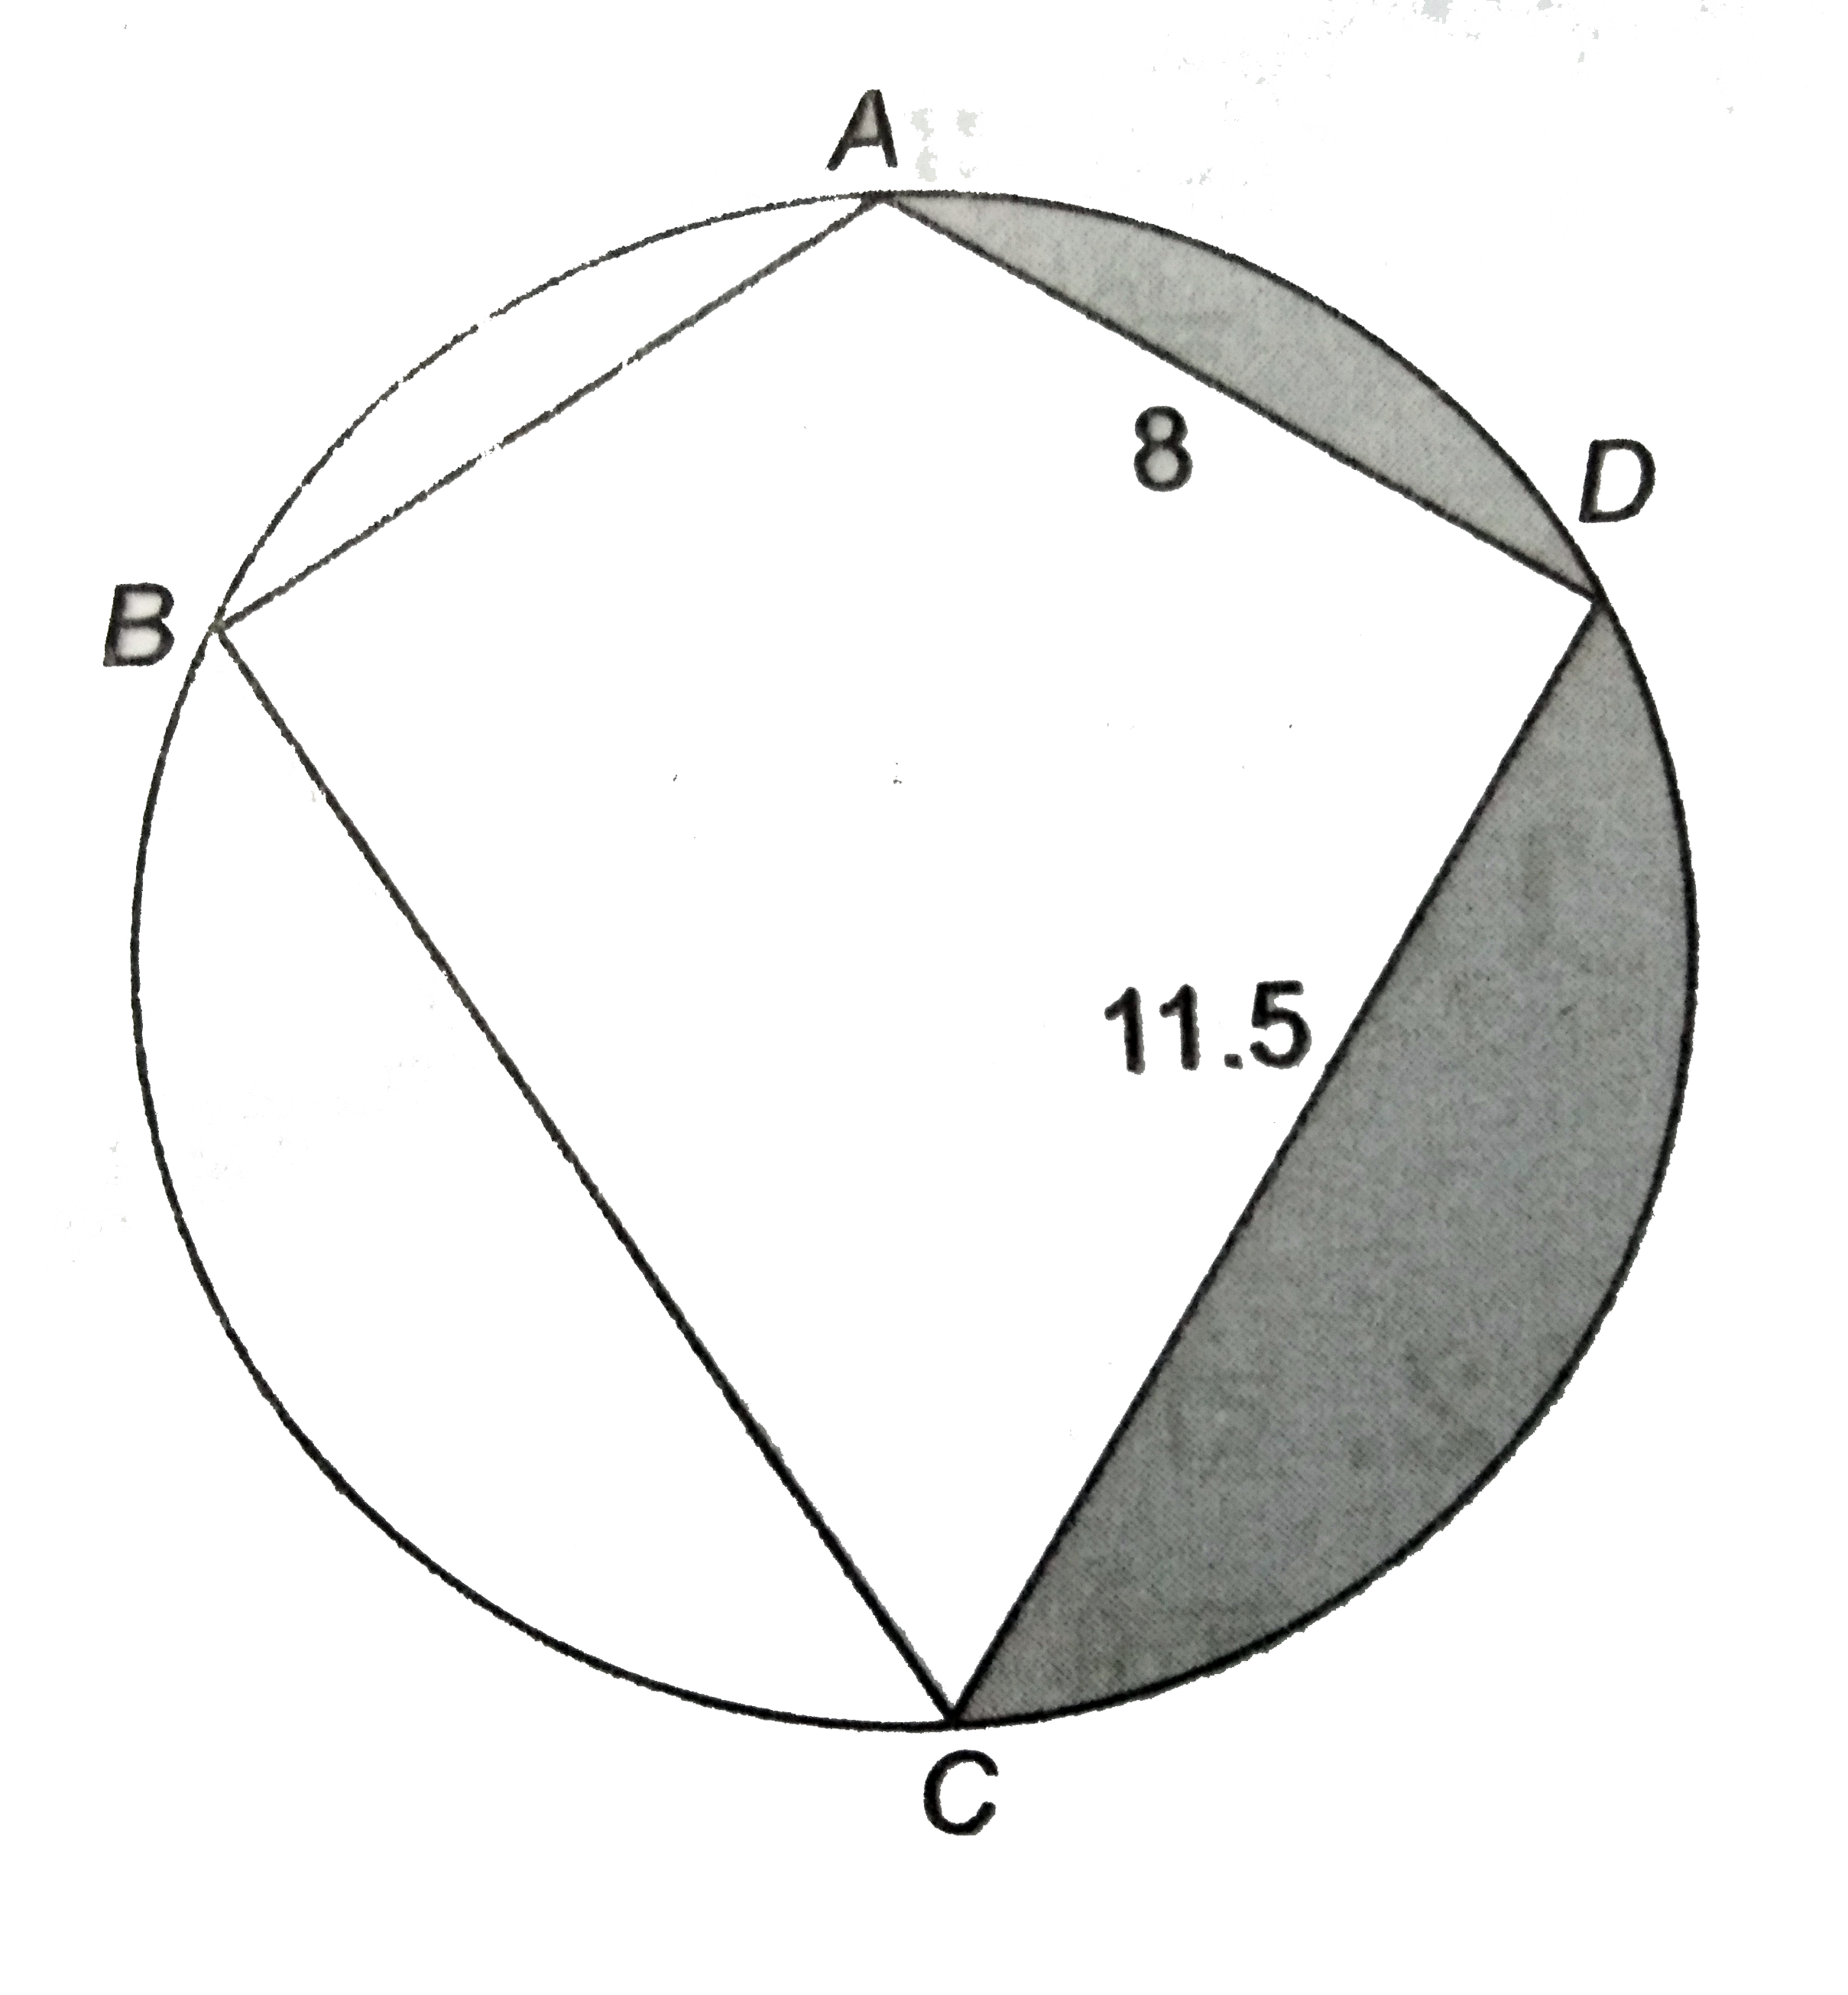 एक पतंग  ABCD , 7  सेमी त्रिज्या के अंतर्गत  बनी है  जिसमें BC = DC = 11.5  सेमी और AB = AD = 8   सेमी है जैसे  संलग्न  चित्र में दर्शाया  गया है । चक्रीय  चतुर्भुज  ABCD  का क्षेत्रफल  और छायांकित  भाग का क्षेत्रफल  ज्ञात कीजिए ।